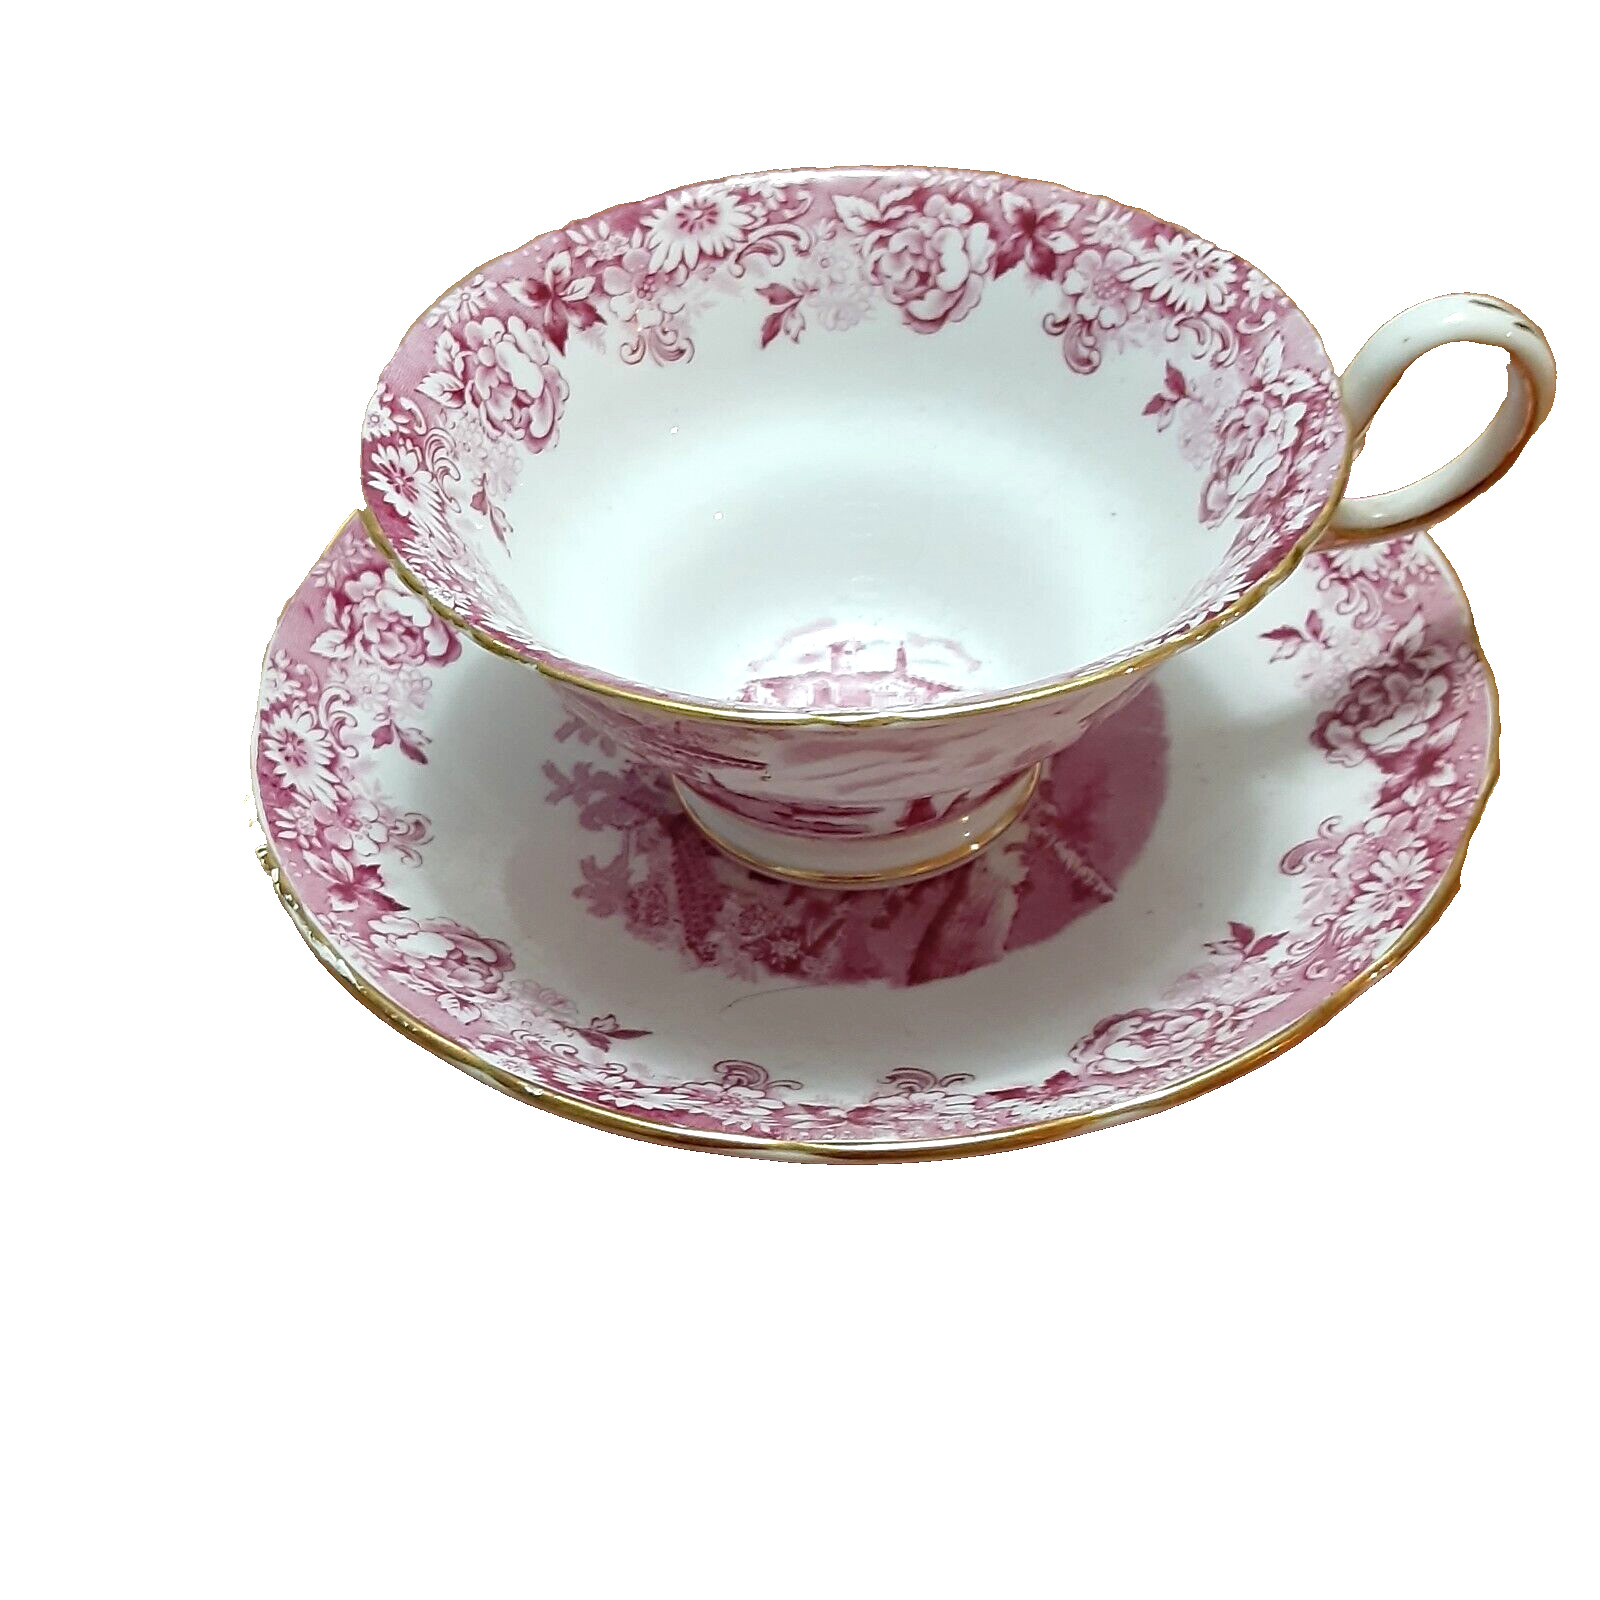 Antique rare Copelands Grosvenor raspberry pink teacup saucer transferware